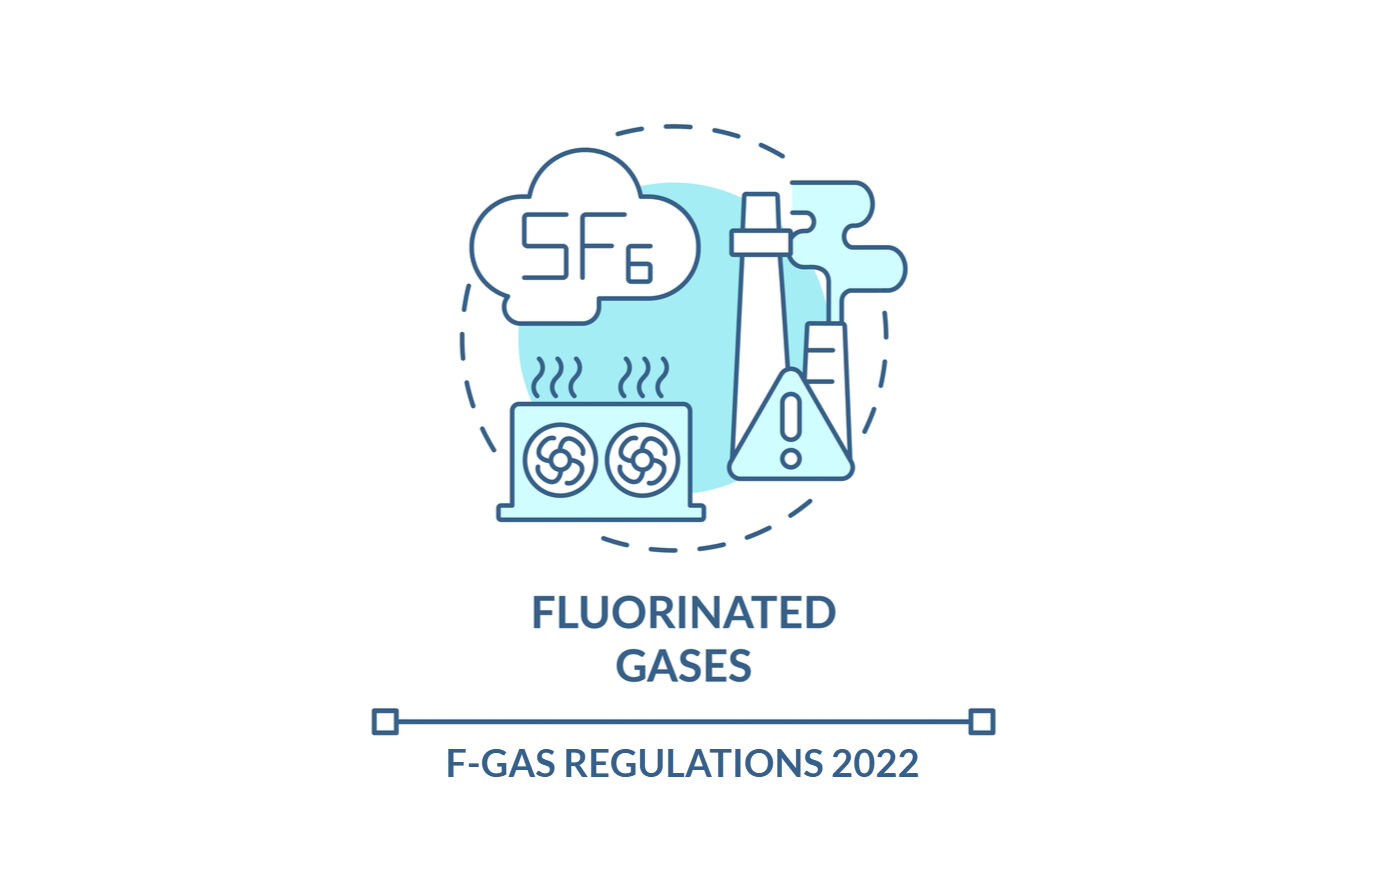 F-gas regulations 2022